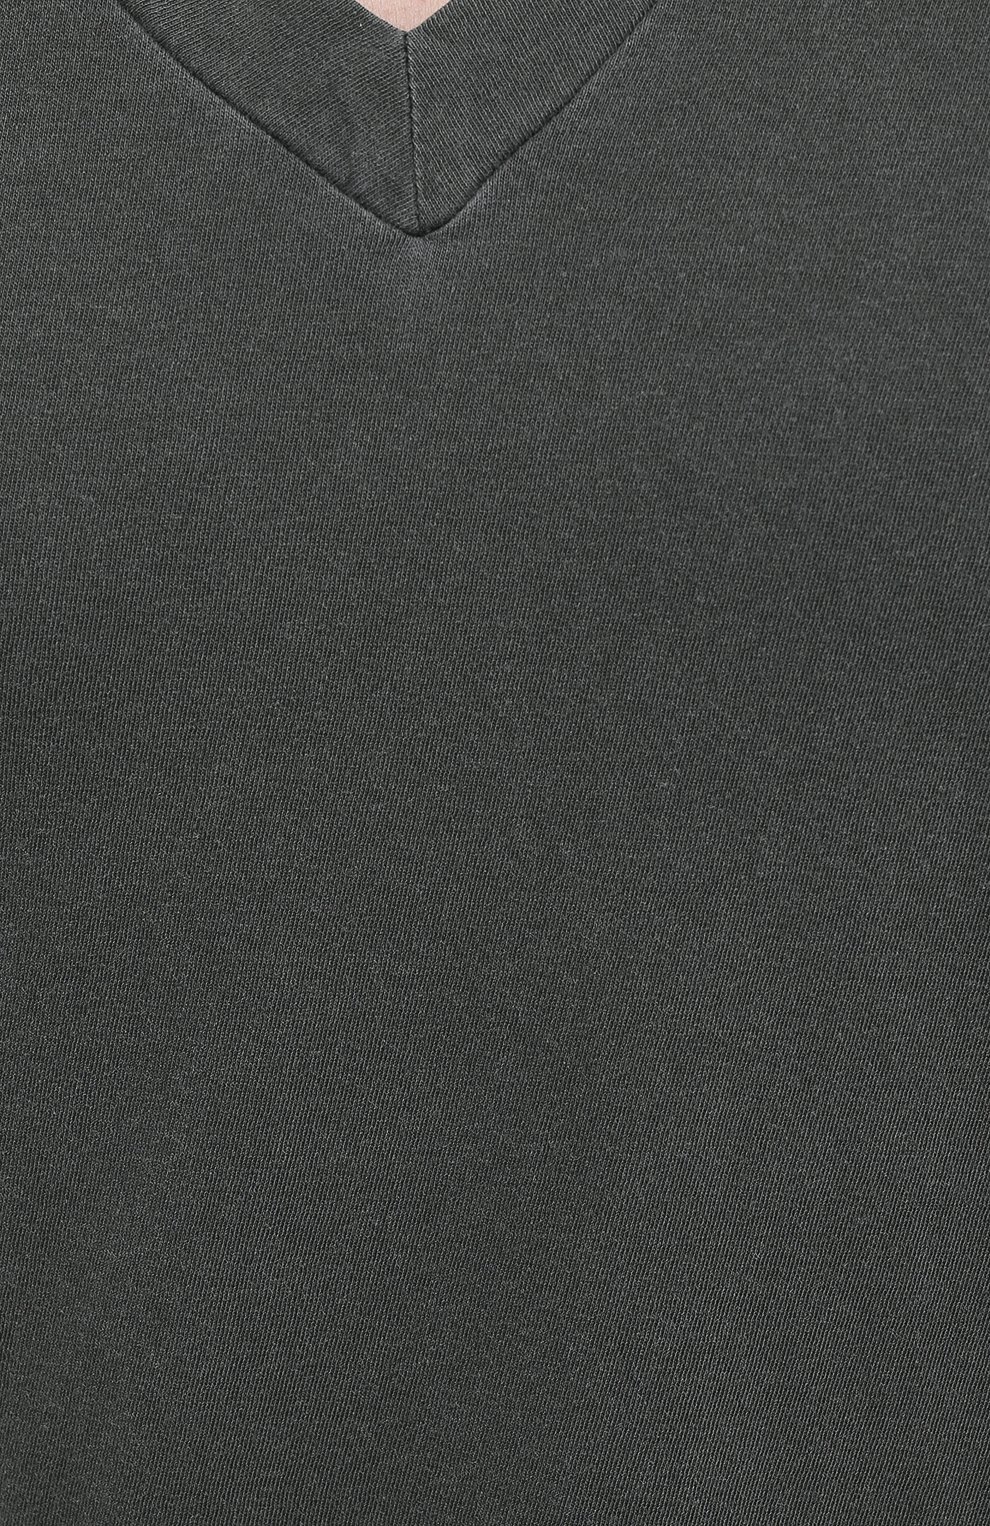 Мужская хлопковая футболка JAMES PERSE хаки цвета, арт. MLJ3352 | Фото 5 (Принт: Без принта; Рукава: Короткие; Длина (для топов): Стандартные; Мужское Кросс-КТ: Футболка-одежда; Материал внешний: Хлопок; Стили: Кэжуэл)